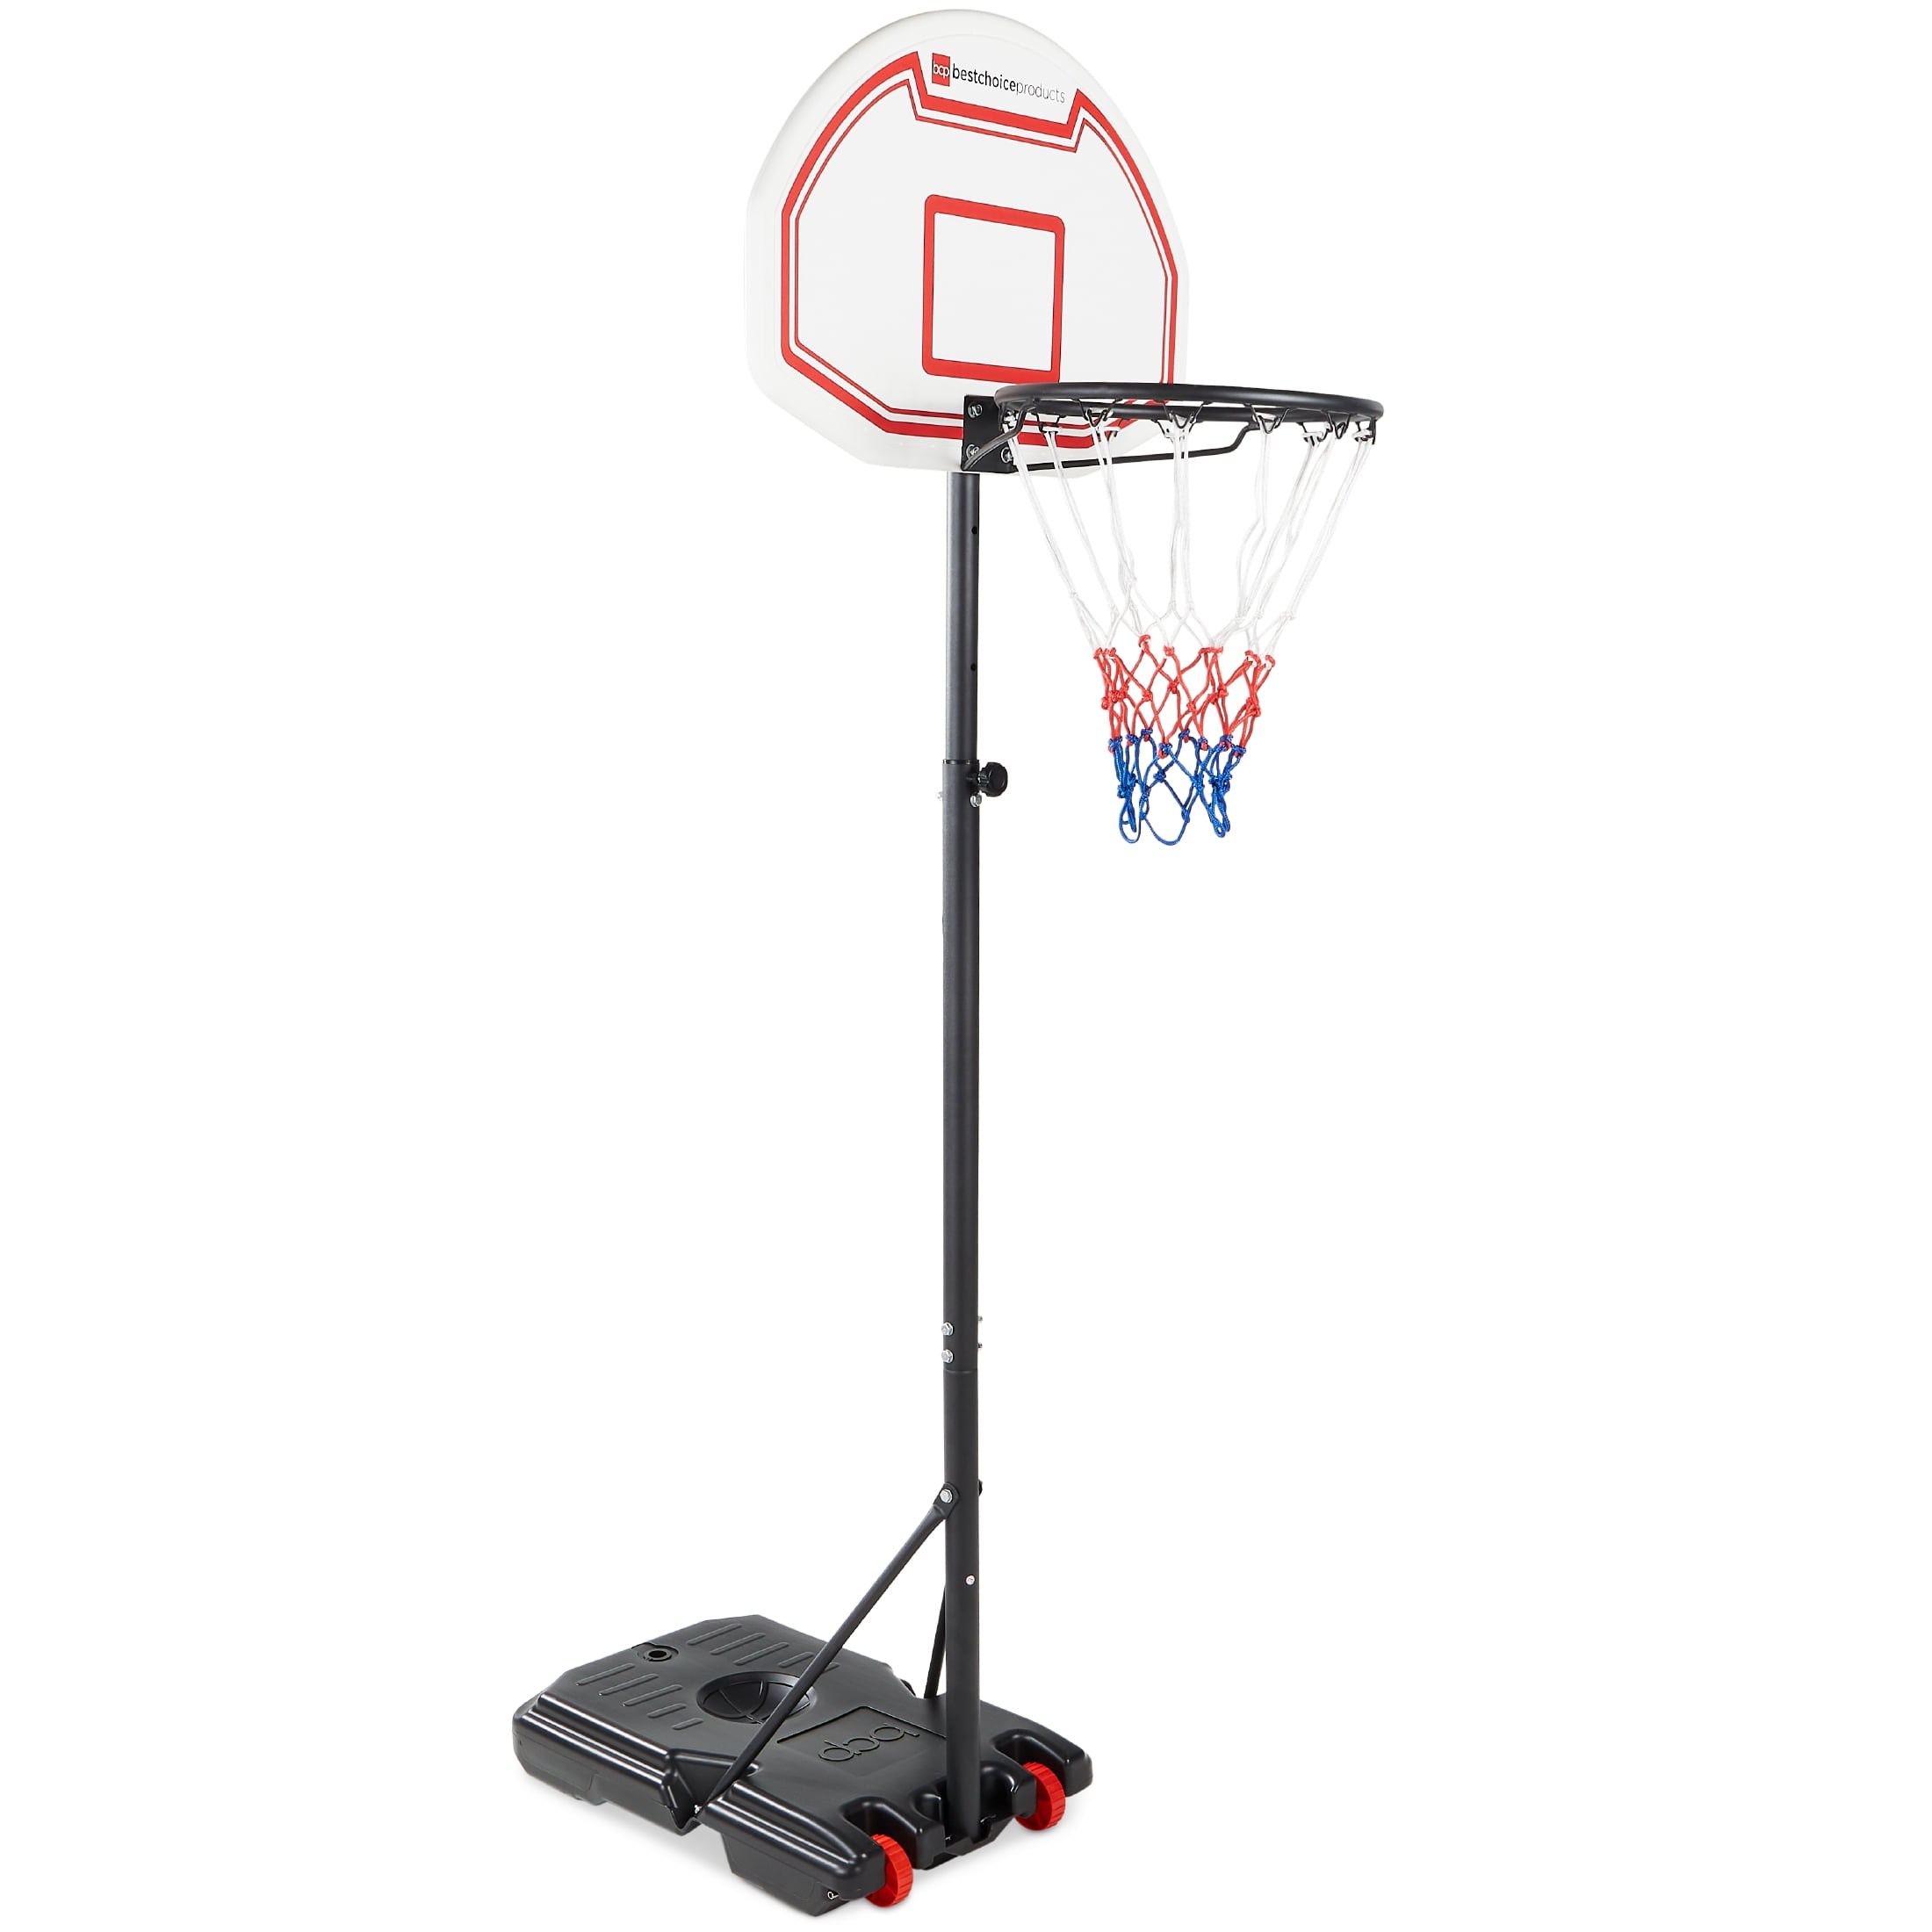 Adjustable Basketball Goal Hoop Backboard Rim Kids Portable Outdoor System 